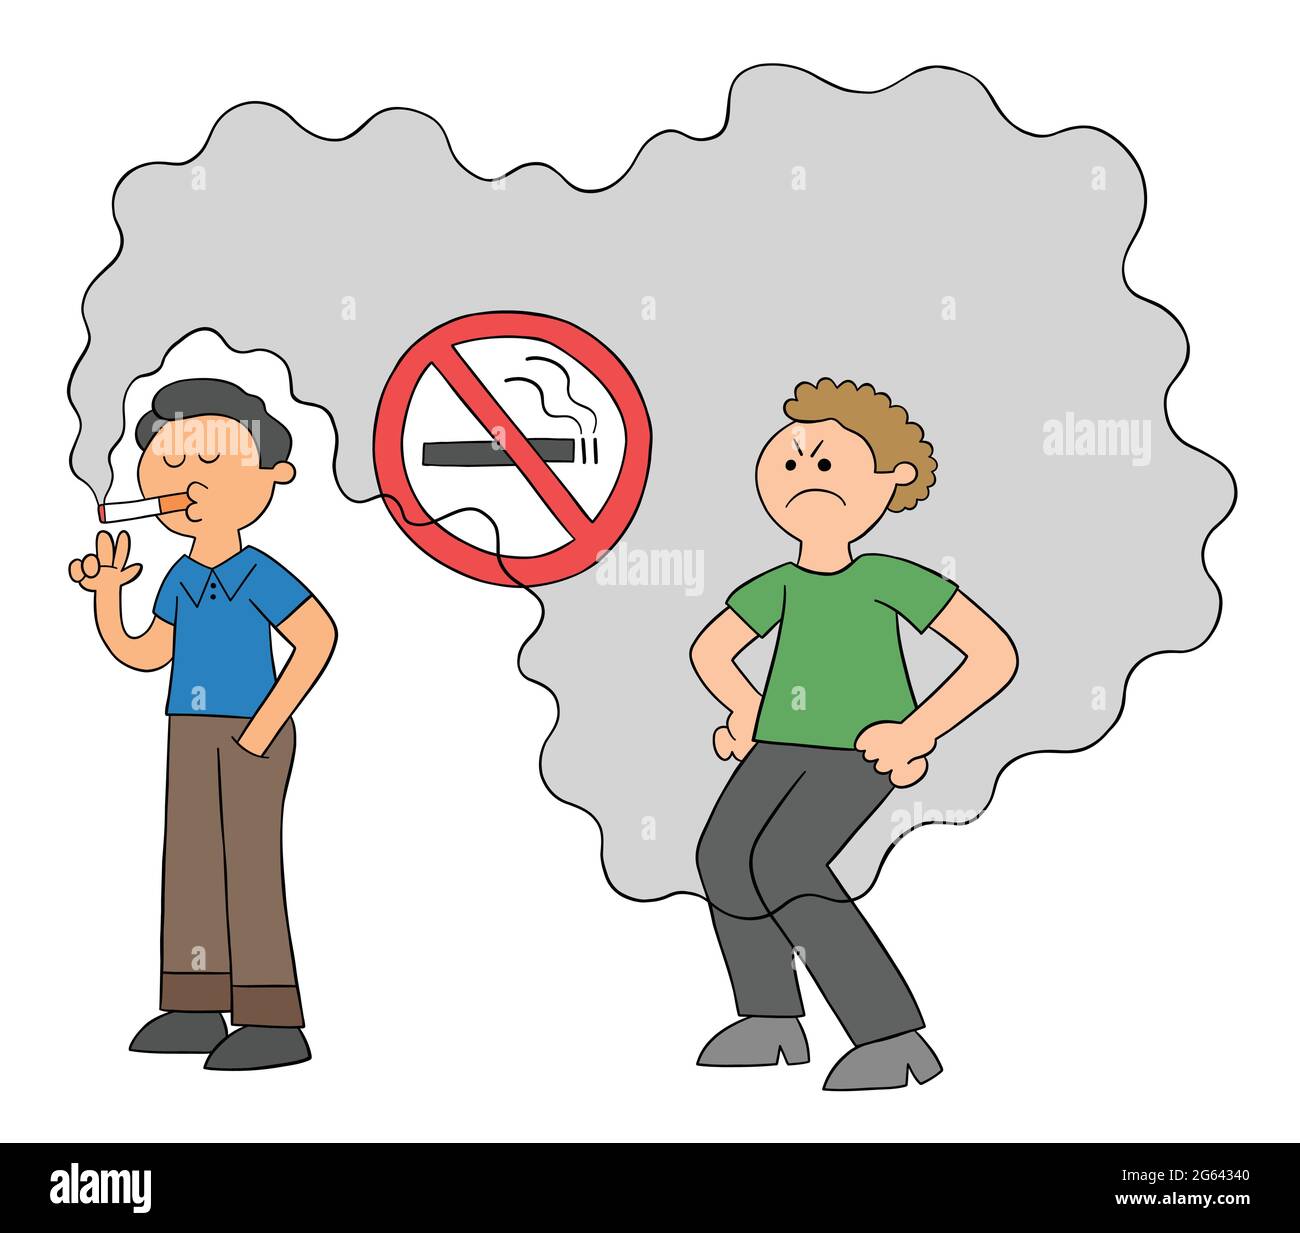 Cartoon-Mann raucht in Nichtraucher-Platz und Mann dahinter wird durch Zigarettenrauch gestört, Vektor-Illustration. Farbige und schwarze Umrisse. Stock Vektor